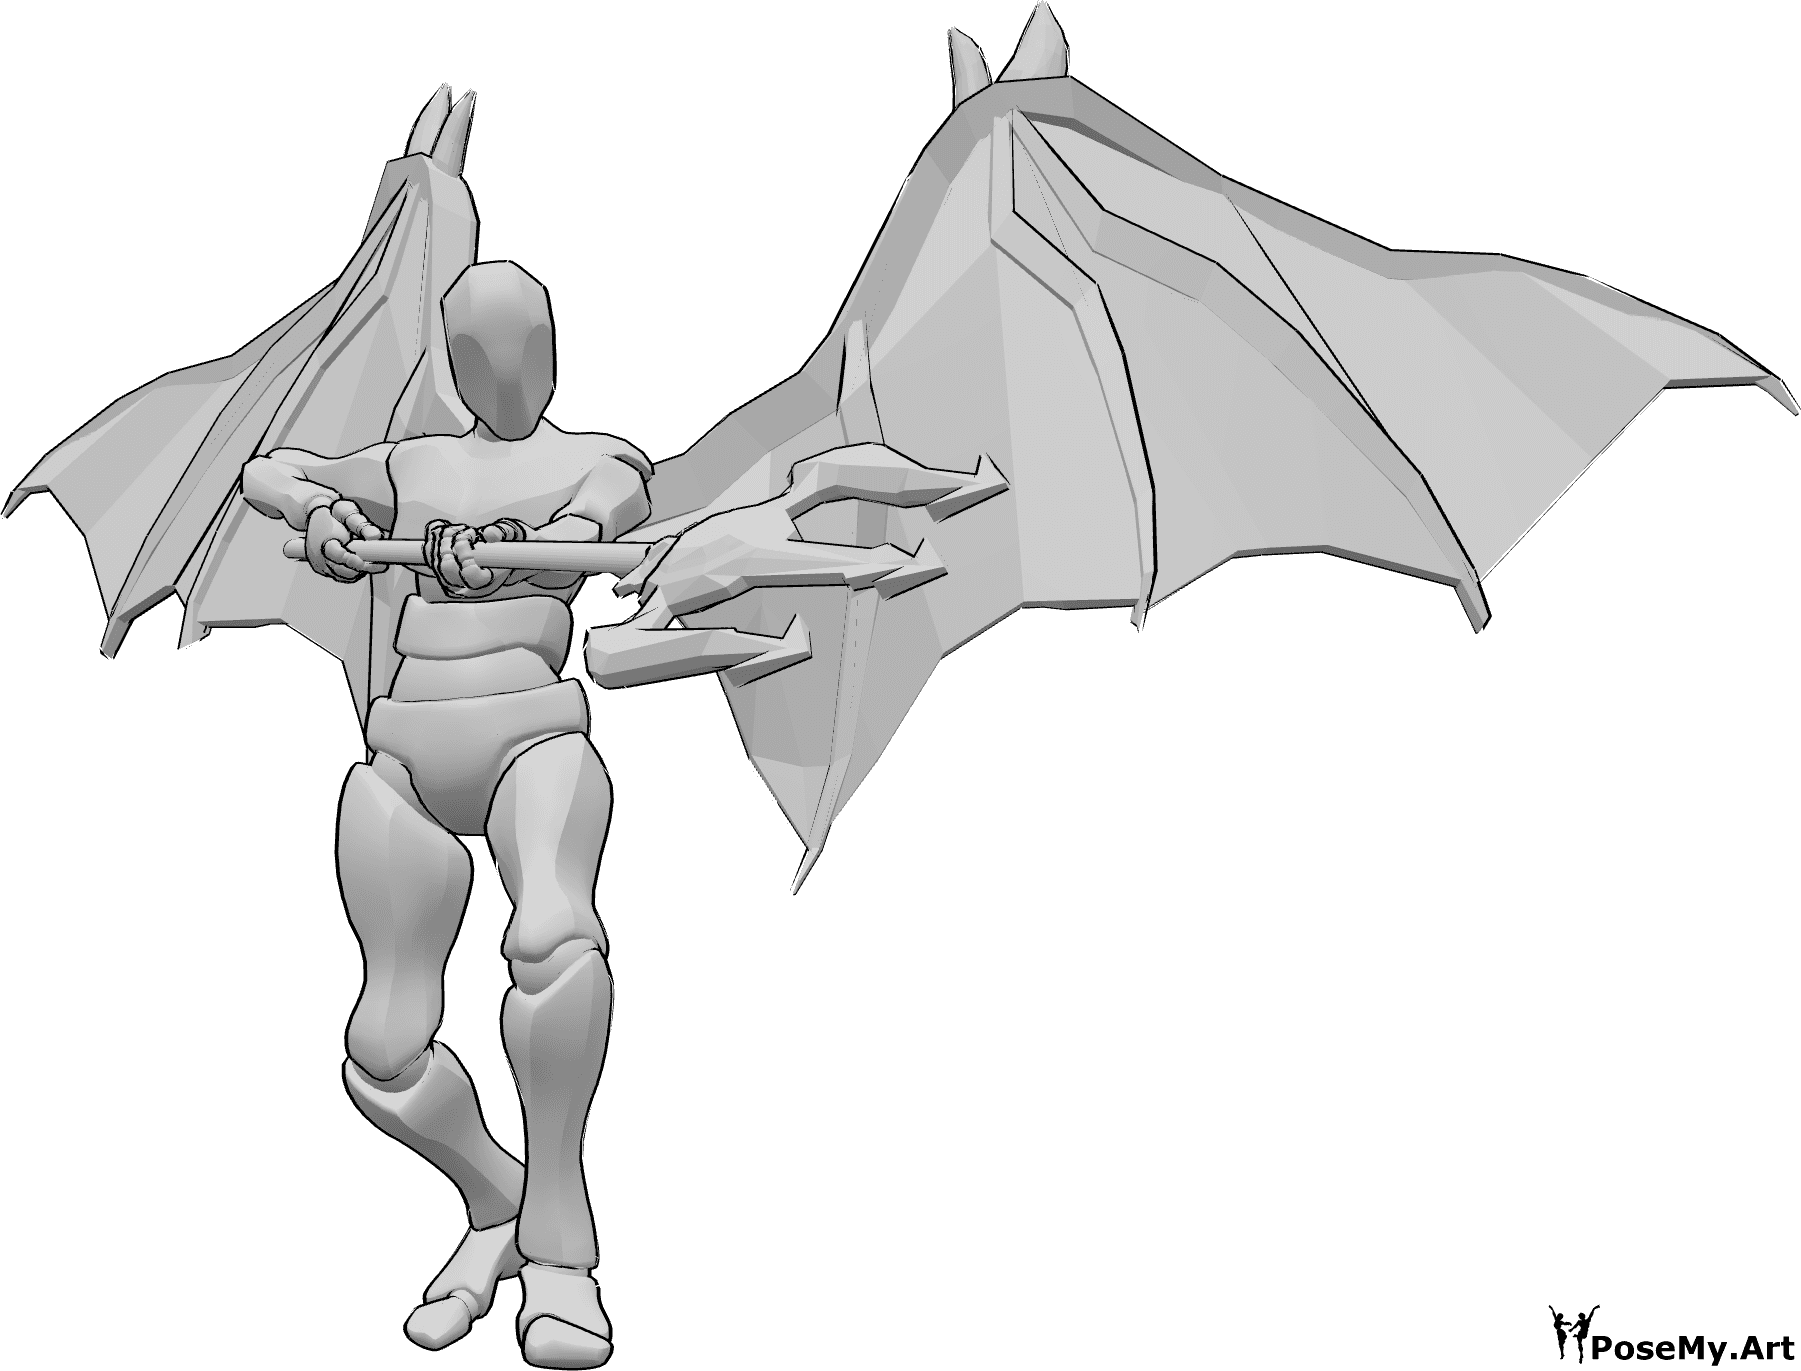 Riferimento alle pose- Posa del demone che punta il tridente - L'uomo con le ali da diavolo sta per attaccare con il suo tridente, tenendolo con entrambe le mani e puntando verso il basso.